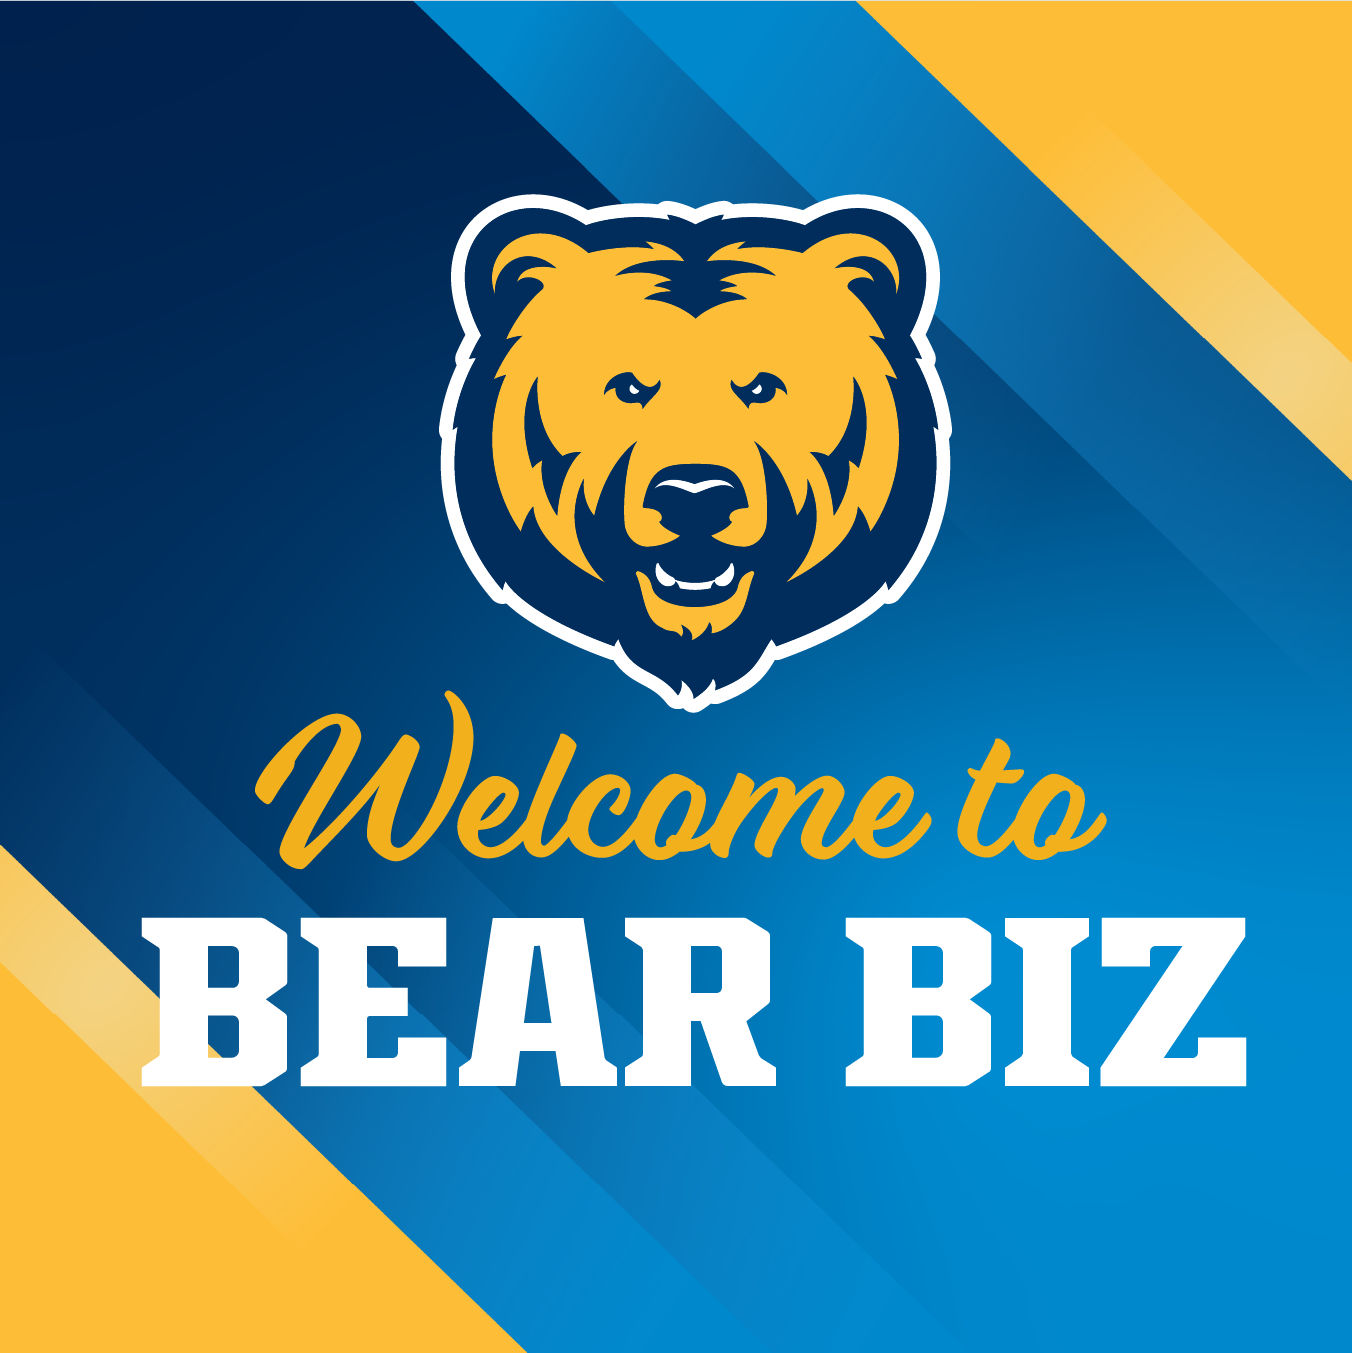 Bear Biz Welcome sign